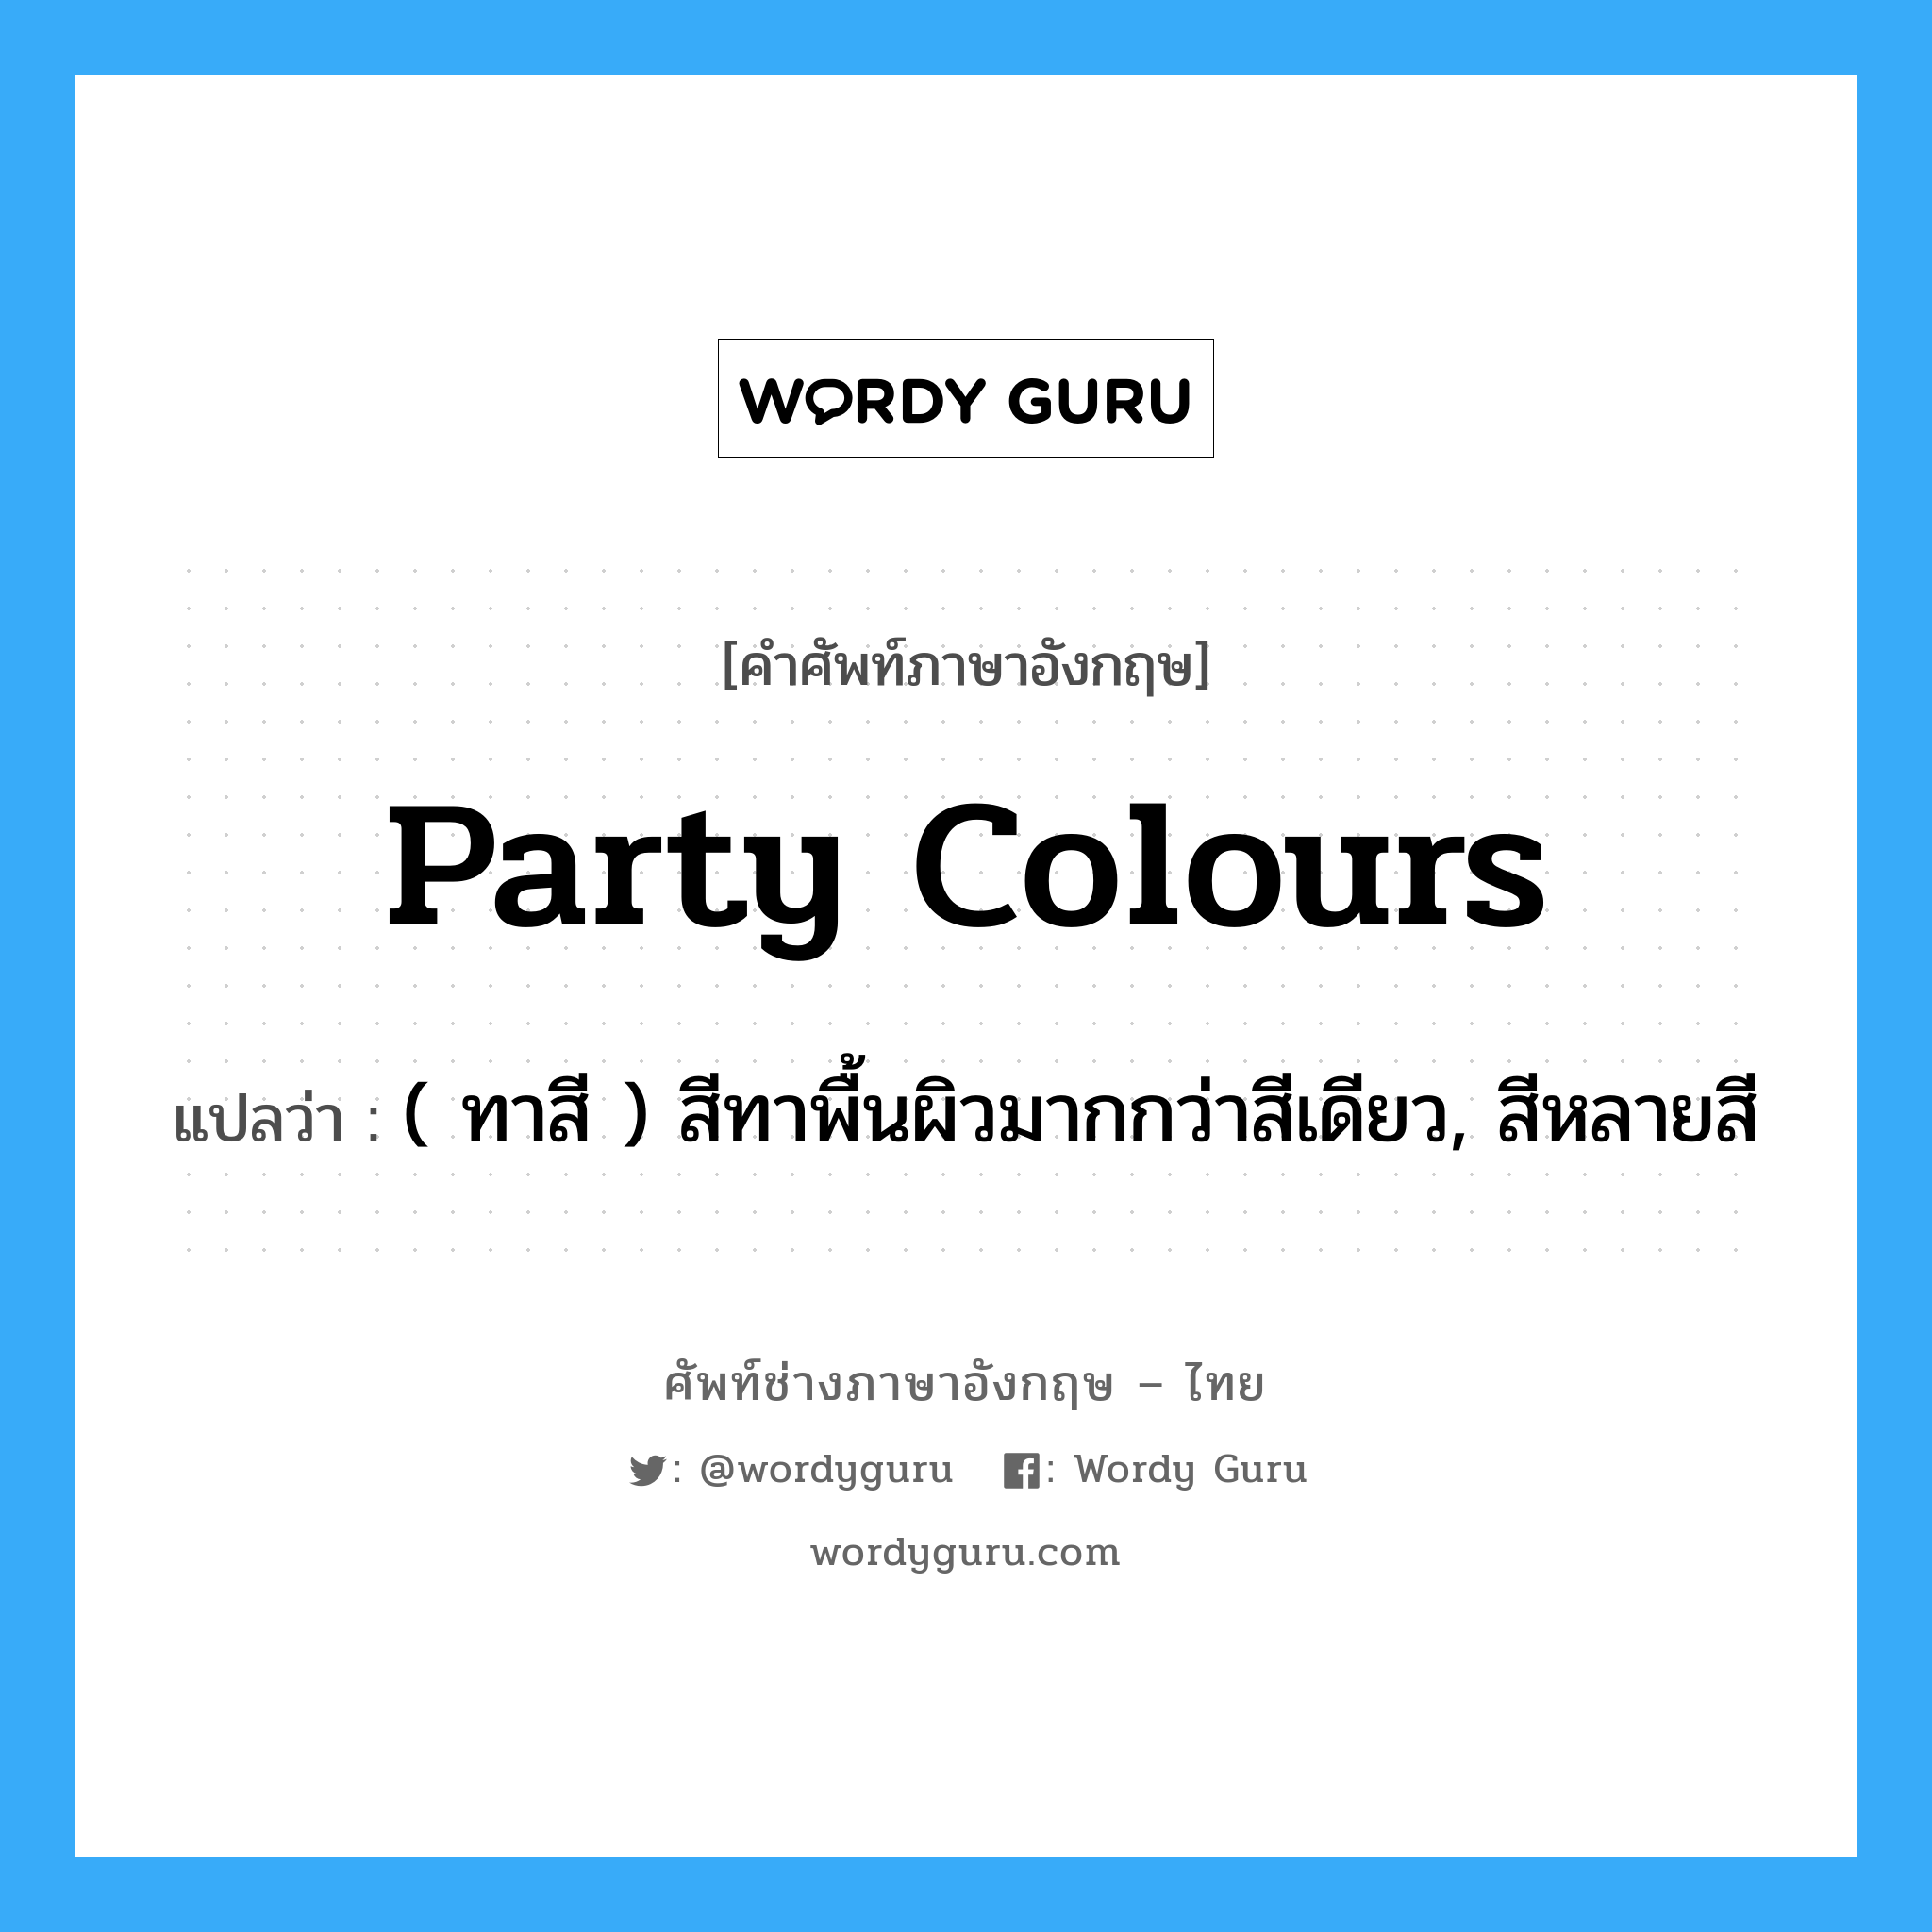 party colours แปลว่า?, คำศัพท์ช่างภาษาอังกฤษ - ไทย party colours คำศัพท์ภาษาอังกฤษ party colours แปลว่า ( ทาสี ) สีทาพื้นผิวมากกว่าสีเดียว, สีหลายสี